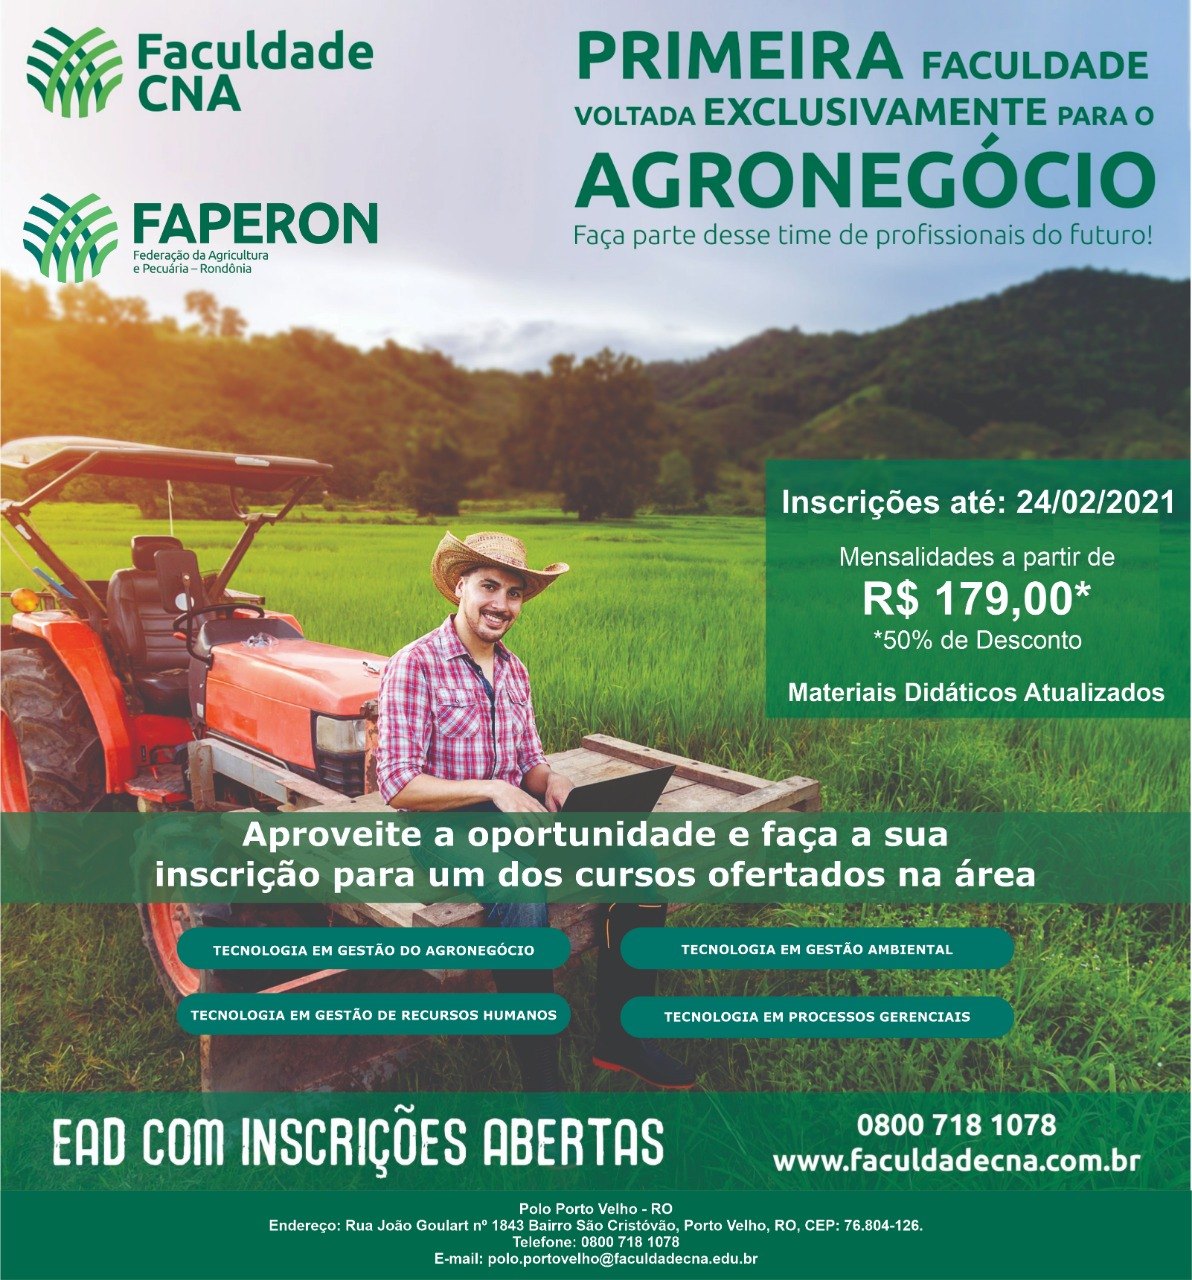 AGRICULTURA: Faperon e CNA promovem cursos voltados para o agronegócio em RO